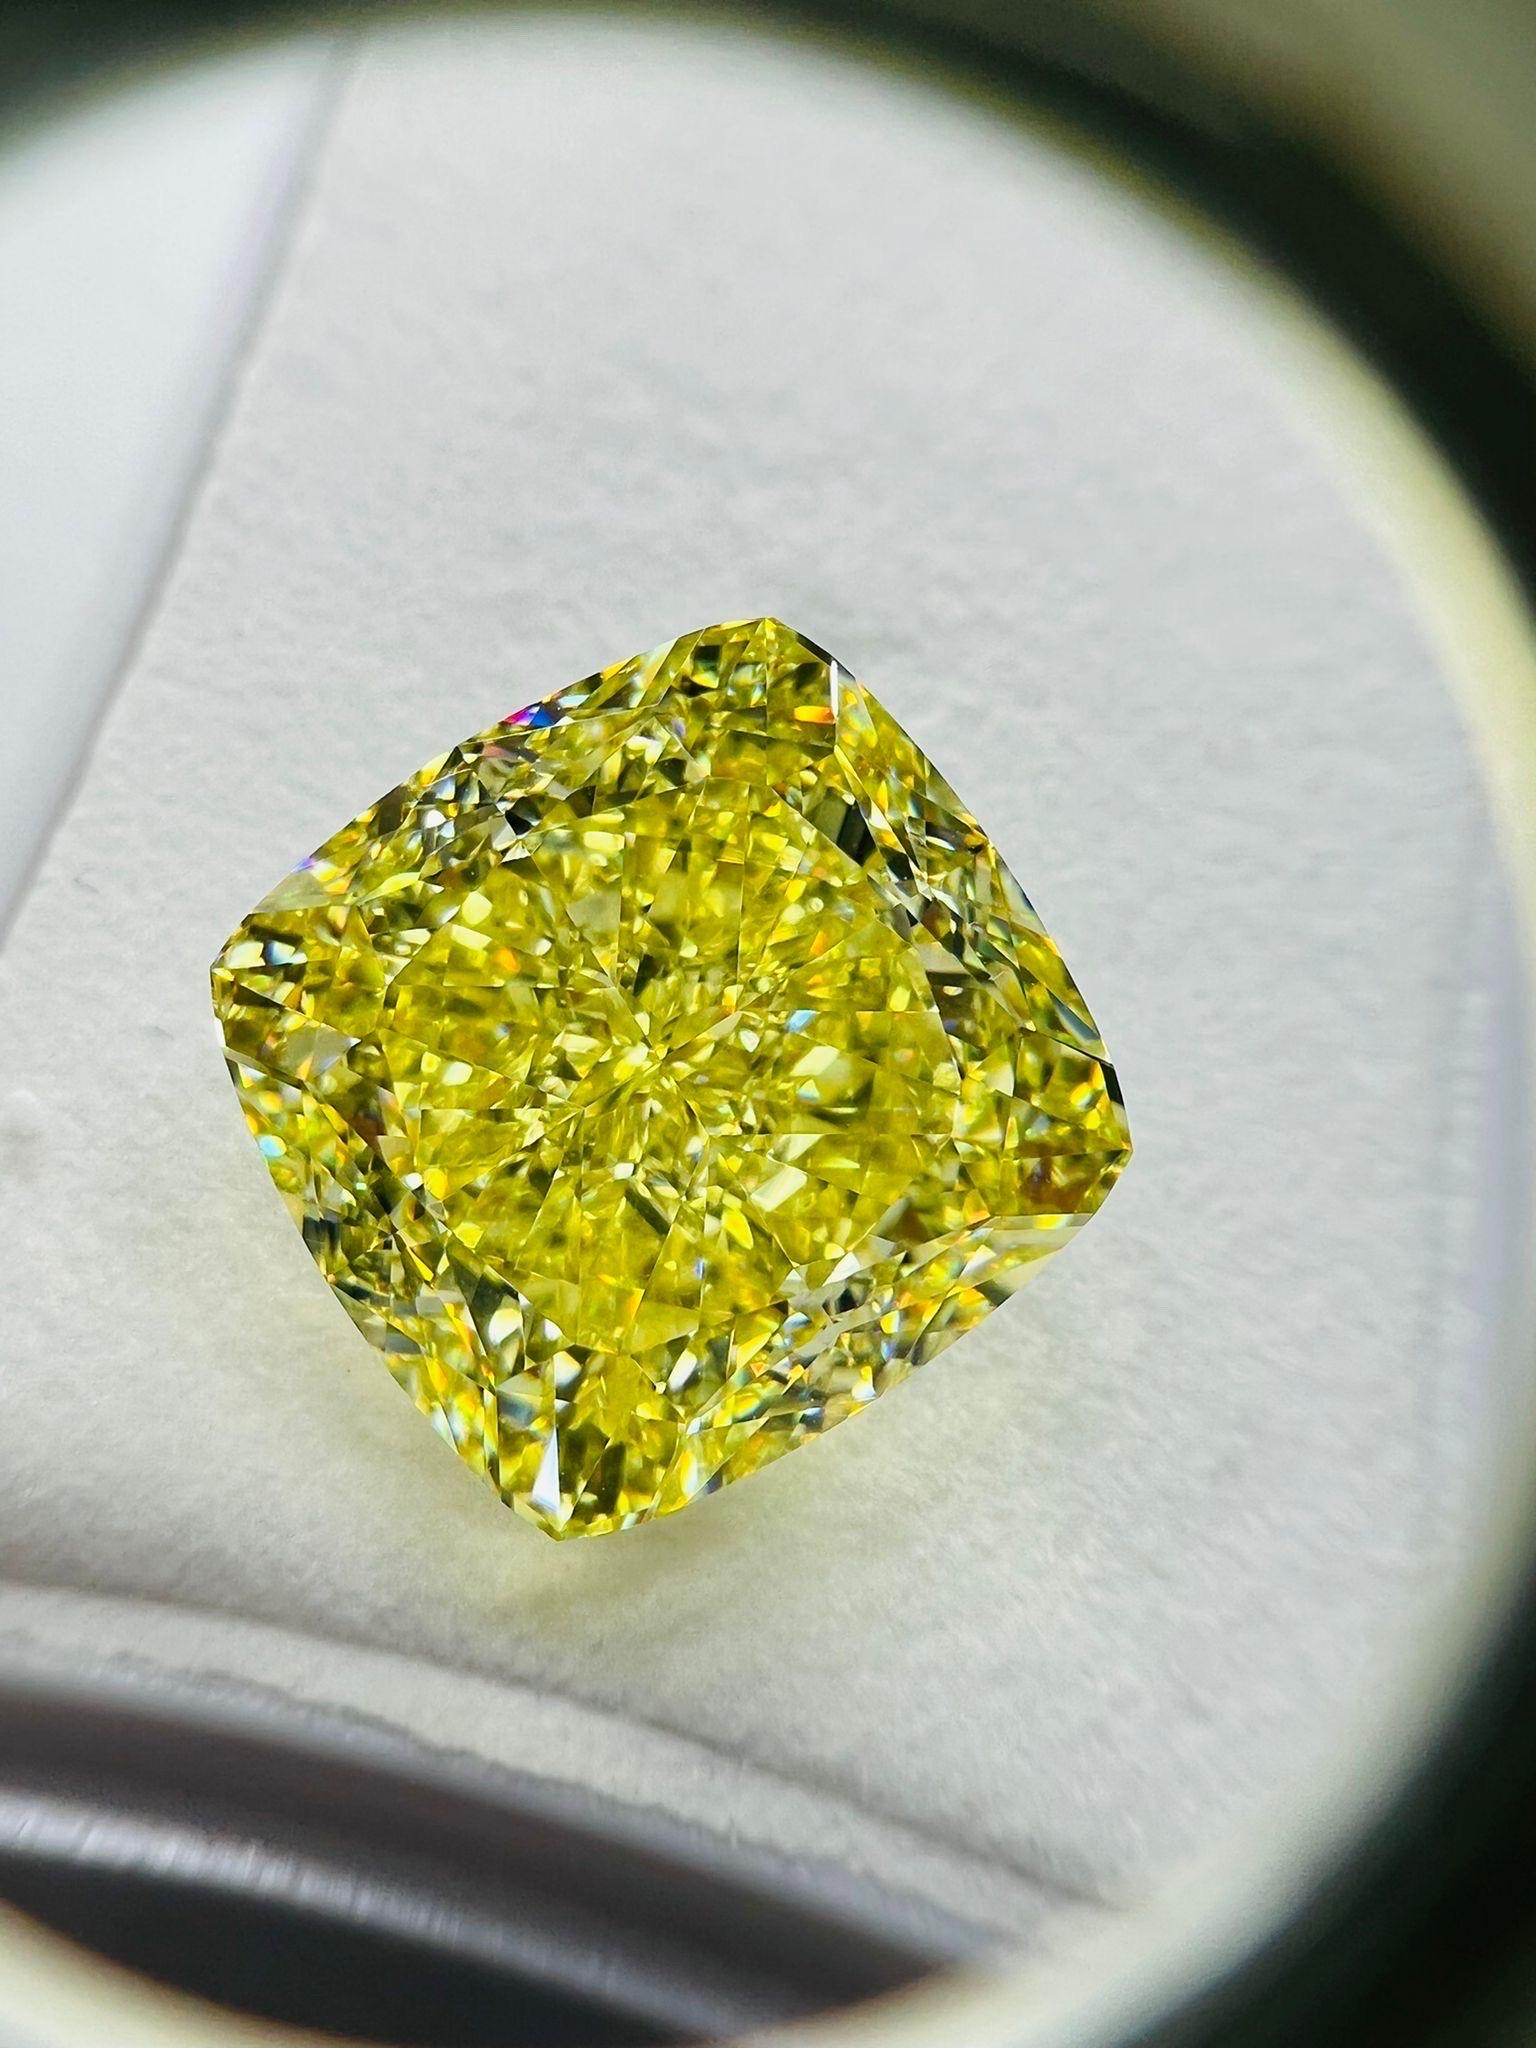 Von Emilio Jewelry, einem bekannten und angesehenen Großhändler mit Sitz auf der berühmten Fifth Avenue in New York,
Ein perfekter, wunderschöner GIA-zertifizierter Fancy Intense Yellow-Diamant mit einem Gewicht von knapp über 20 Karat! Die Farbe